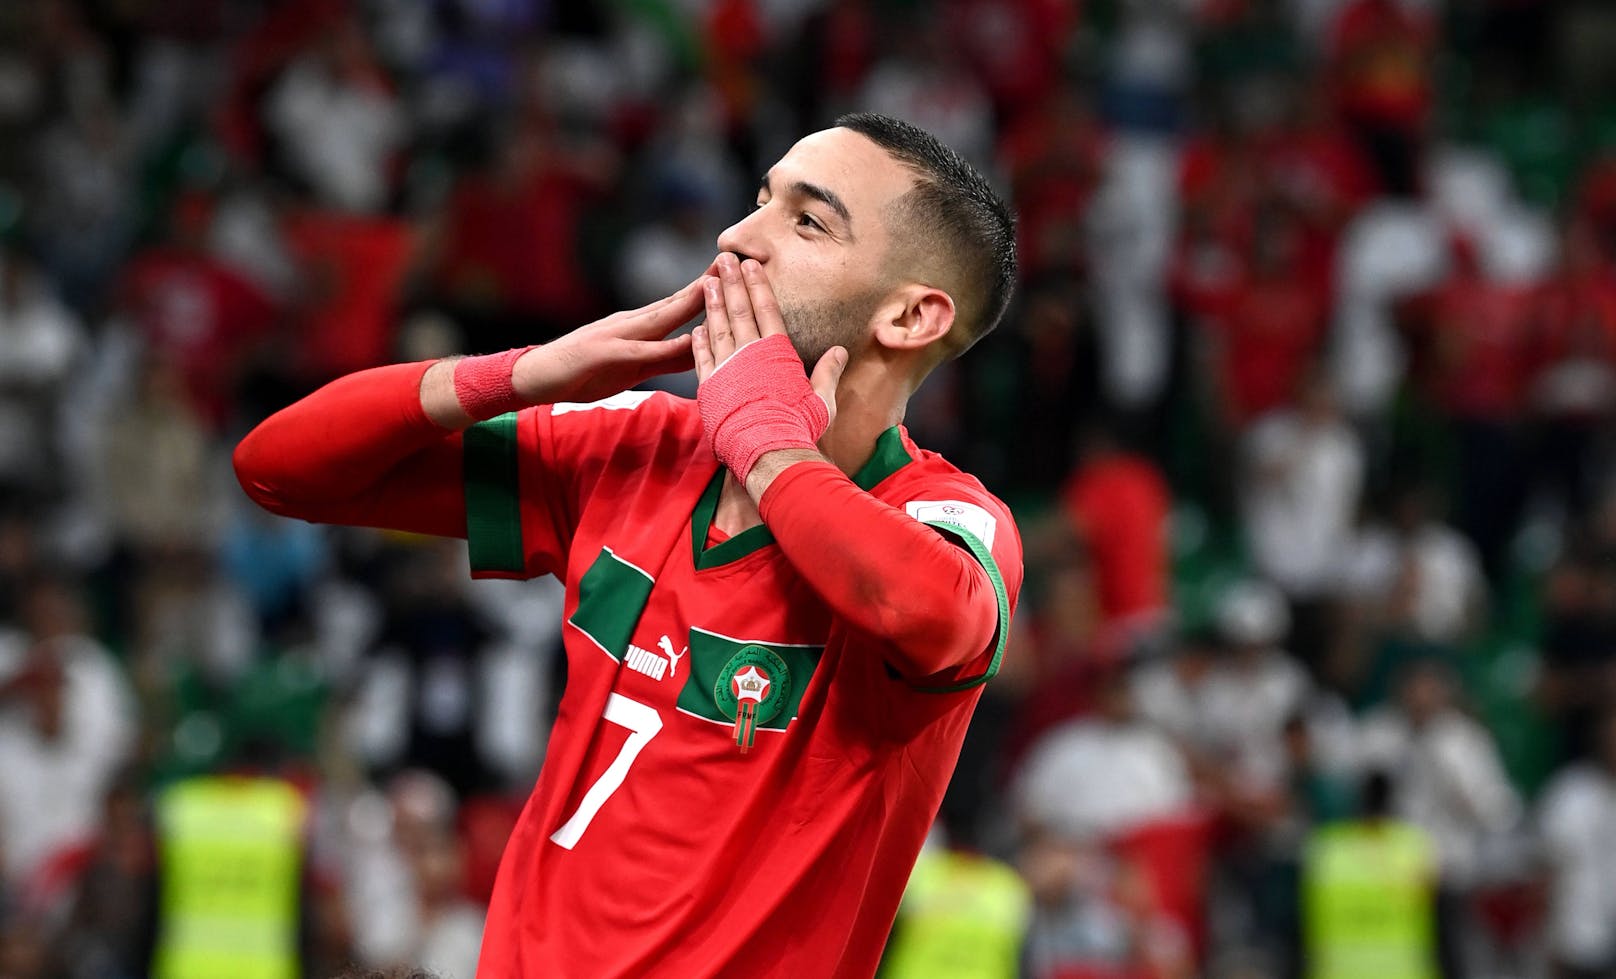 Afrika-Sensation! Marokko-Star spendet alle WM-Prämien